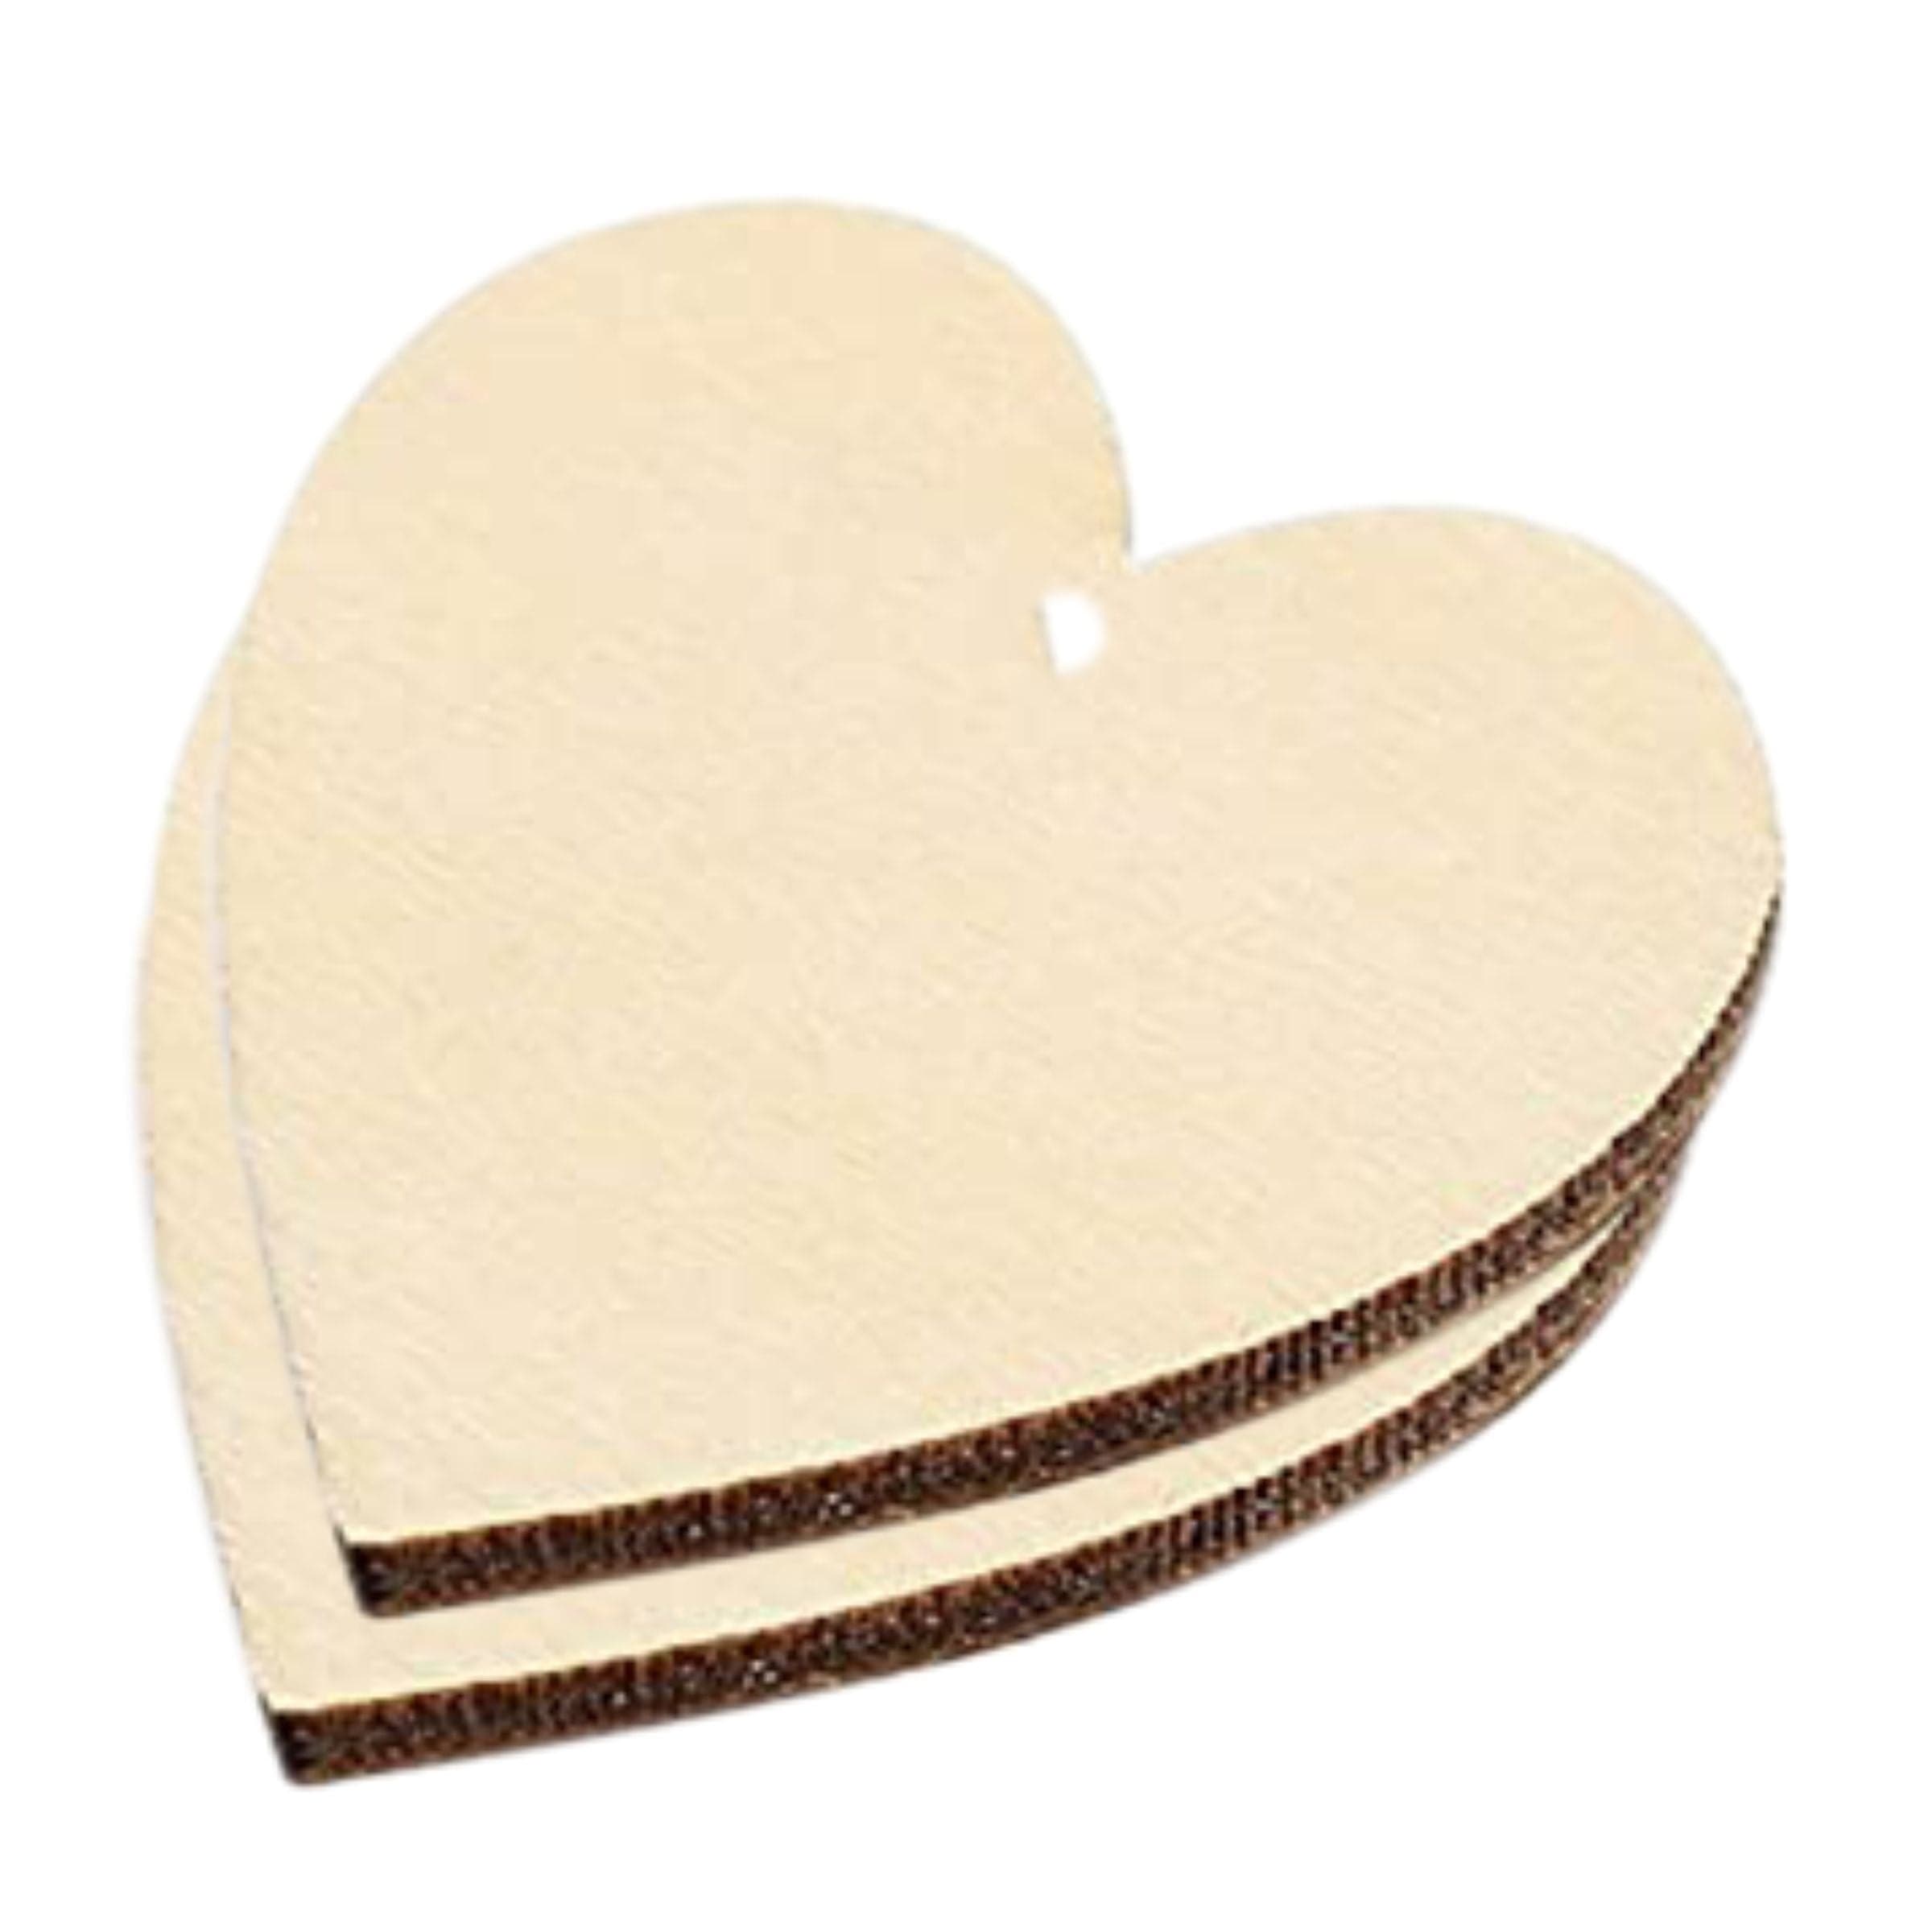 Wooden Slice Heart Shape 3.5 Inch (5 Pcs)